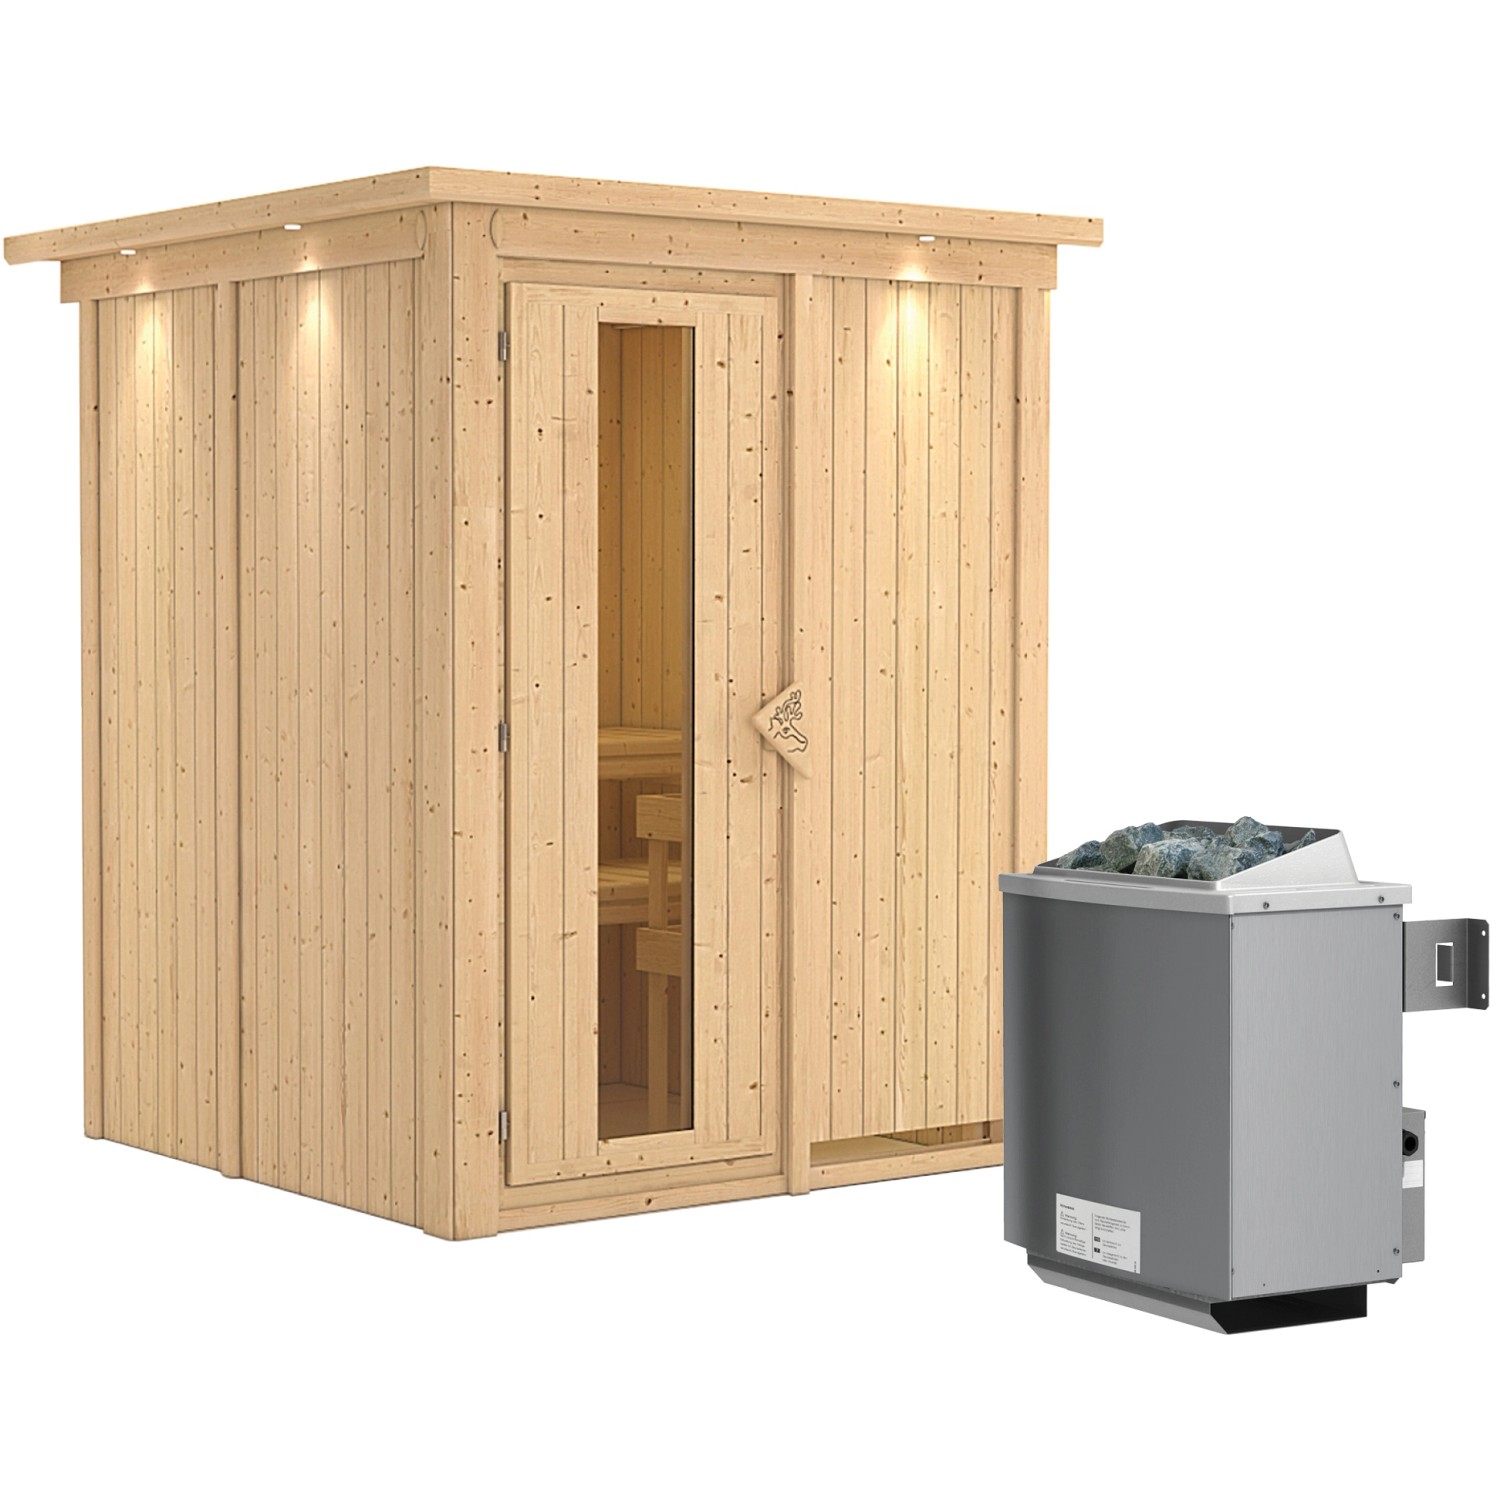 Karibu Sauna Norna inkl. Ofen 9 kW integr. Steuerung, Dachkranz, Energiespa günstig online kaufen